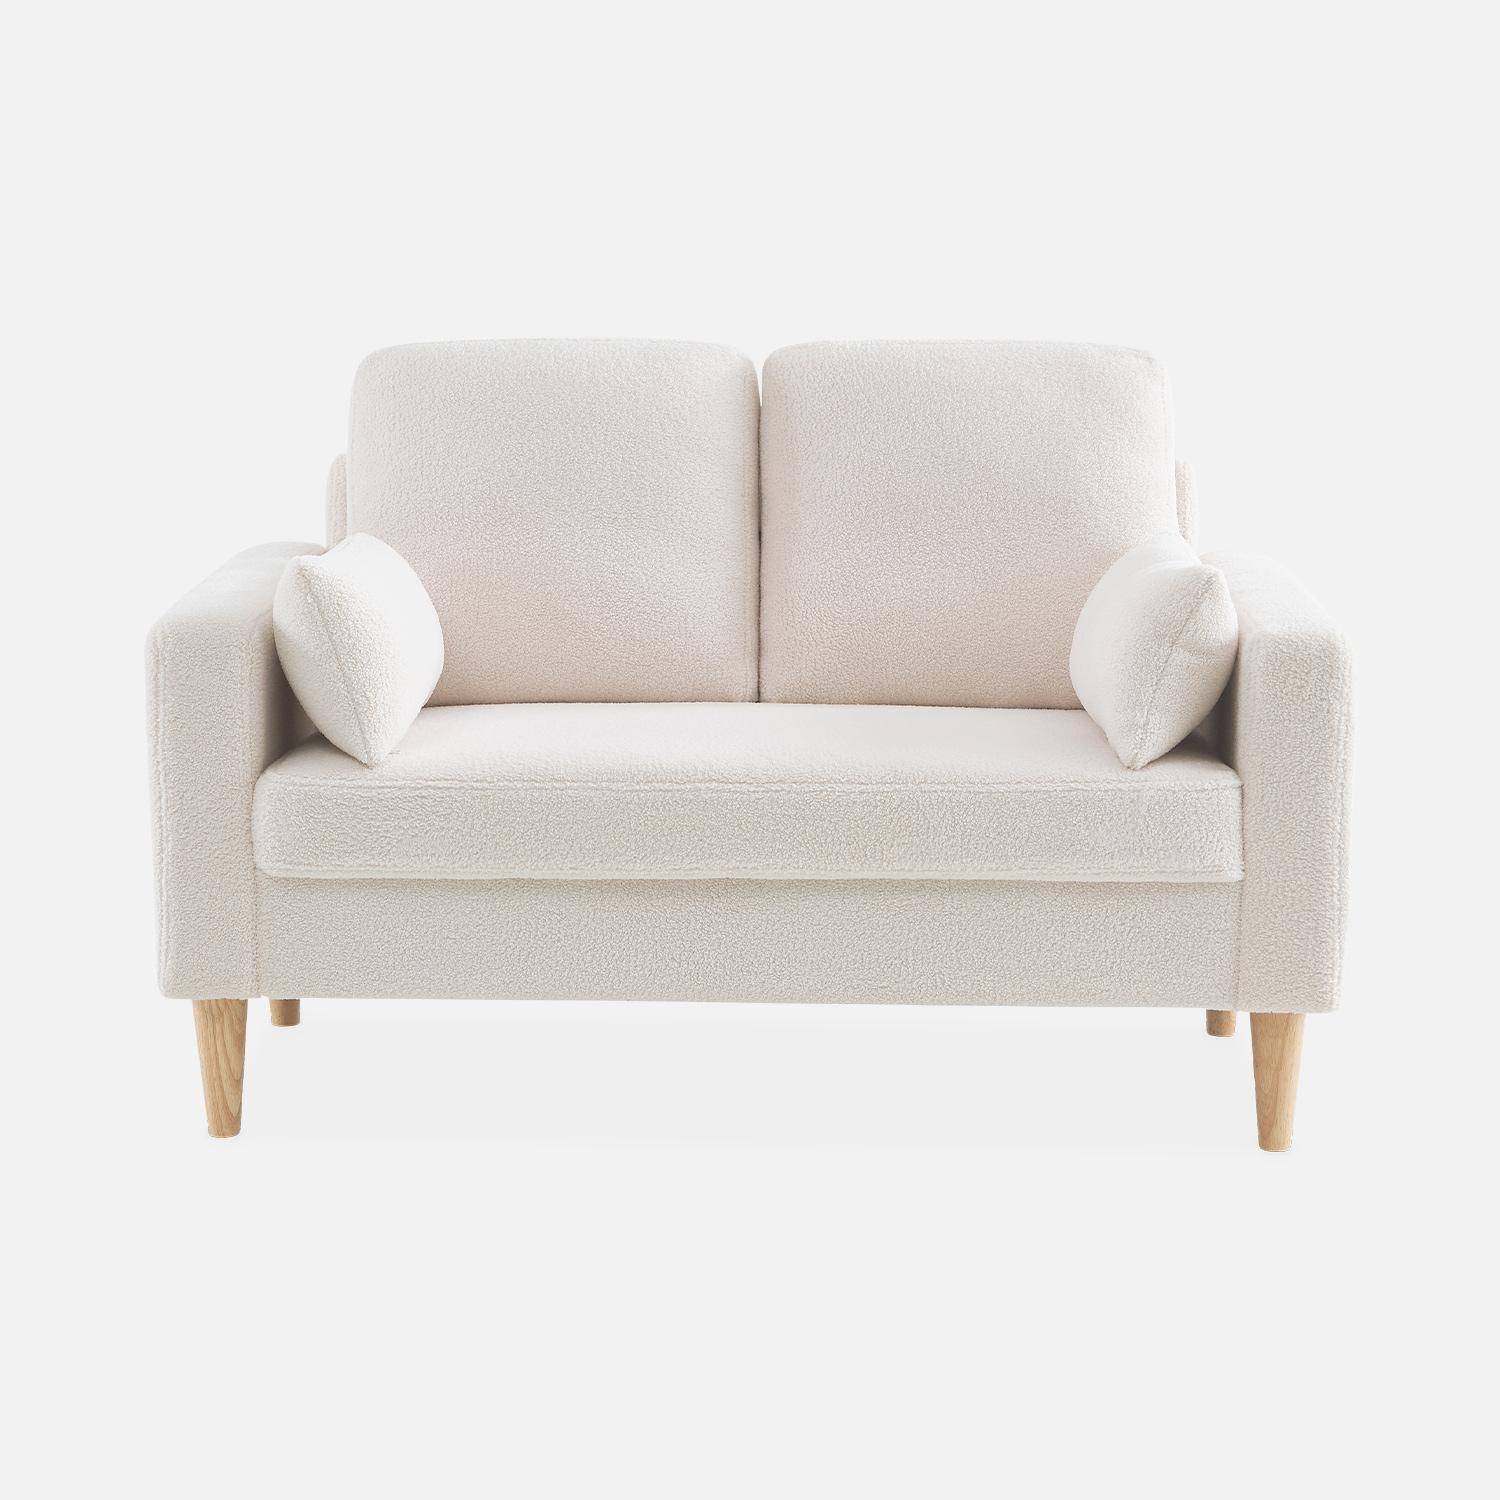 Sofá com caracóis brancos - Bjorn - sofá reto de 2 lugares com pernas de madeira, estilo escandinavo,sweeek,Photo4